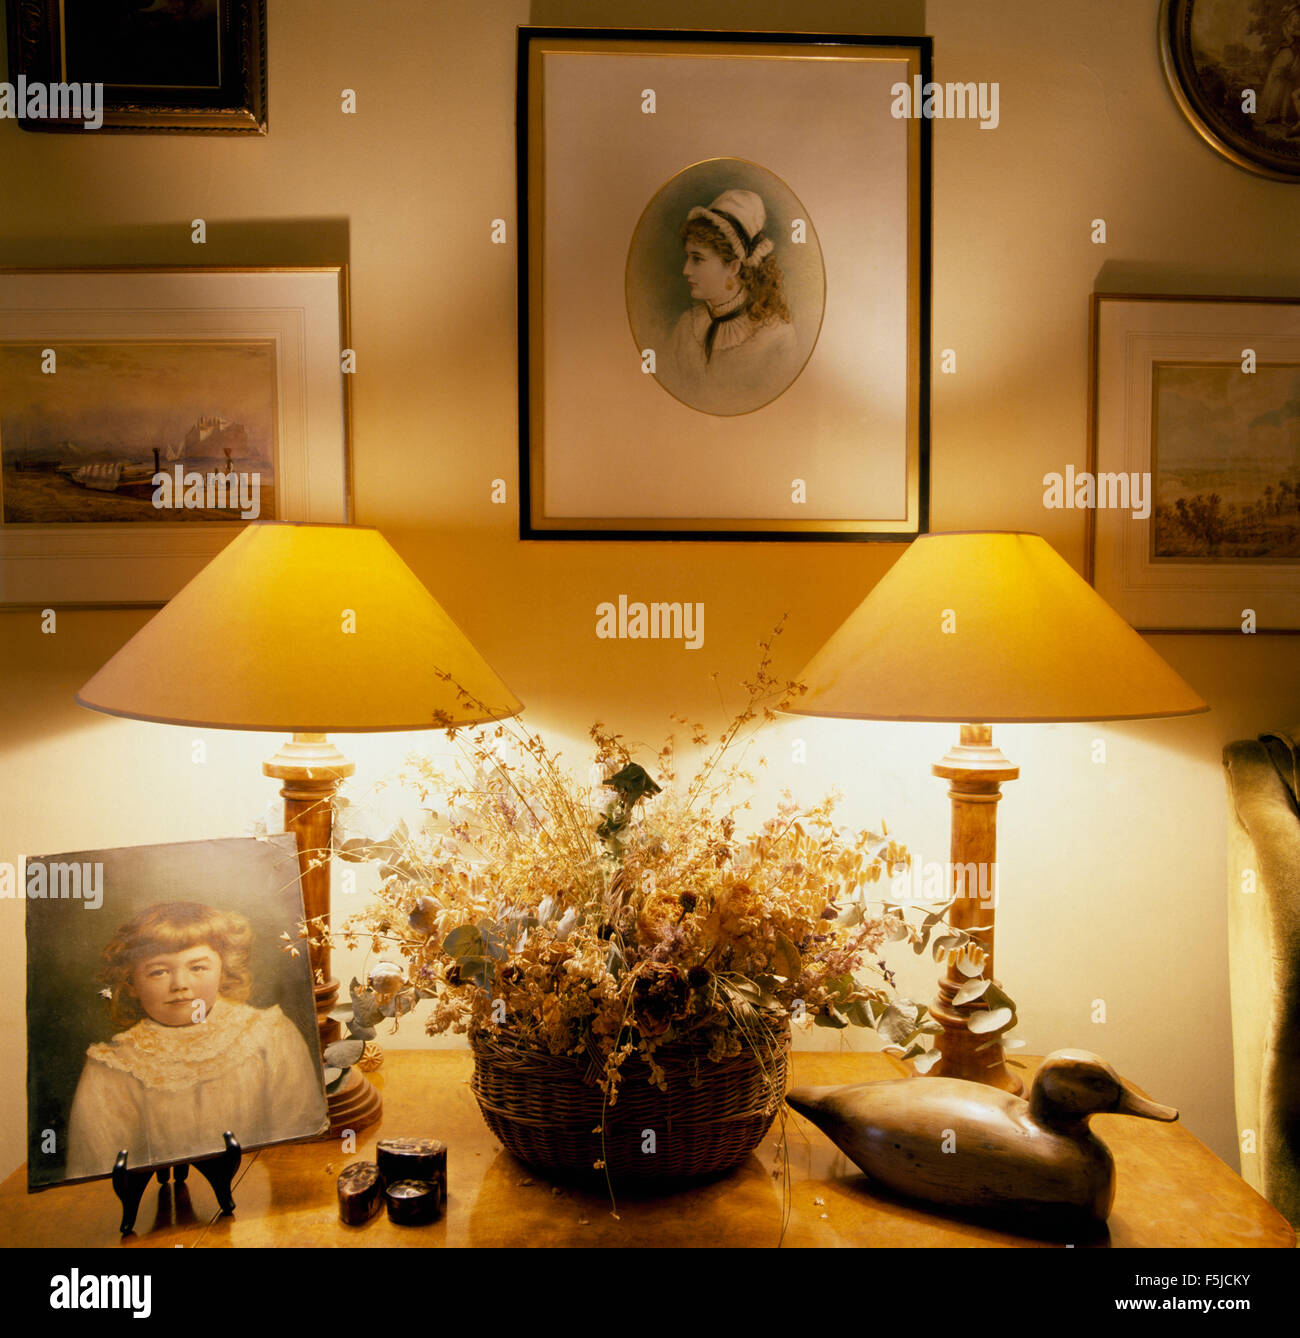 Bilder an der Wand oben beleuchtet Lampen beiderseits eine Schüssel mit getrockneten Blüten auf einem Beistelltisch ein 80er Jahre Esszimmer Stockfoto